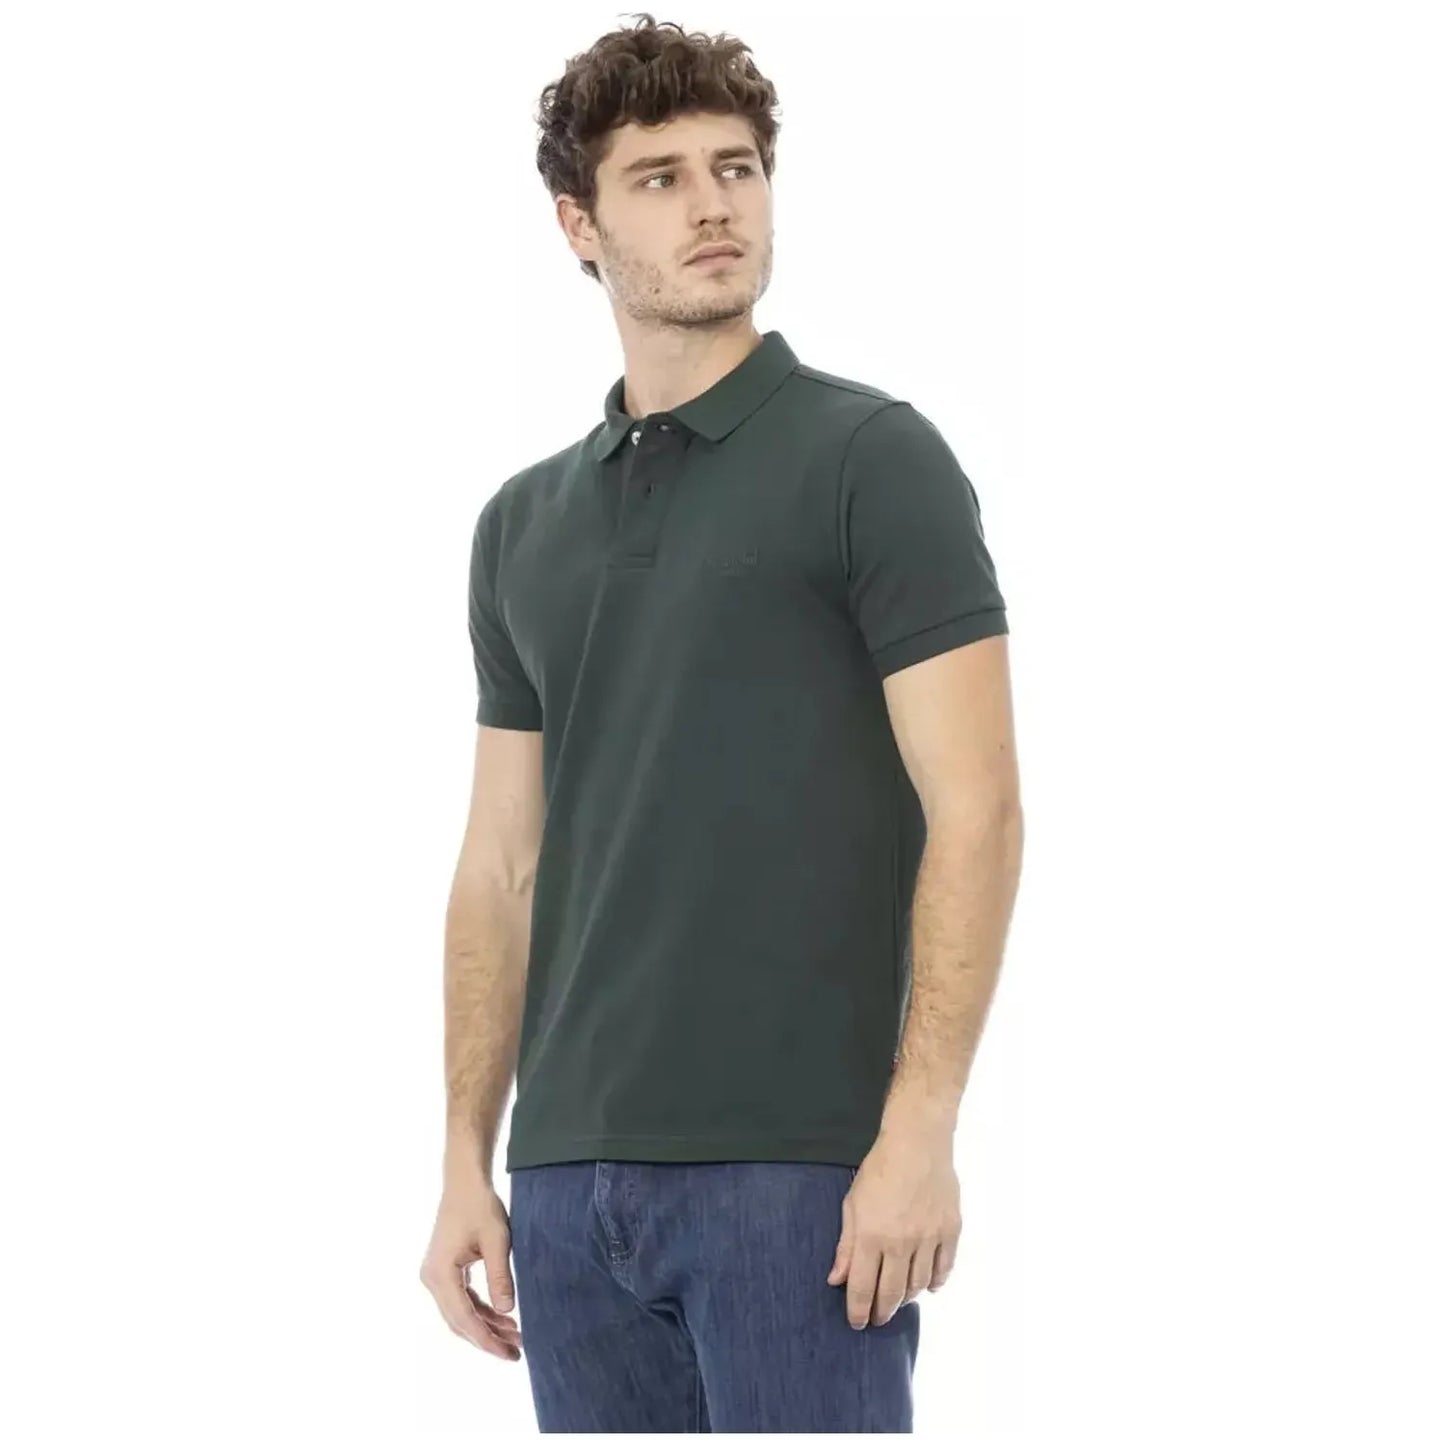 Baldinini Trend Chic Embroidered Cotton Polo Shirt in Green green-cotton-polo-shirt-17 product-23207-732951295-32-08ec1069-d18.webp